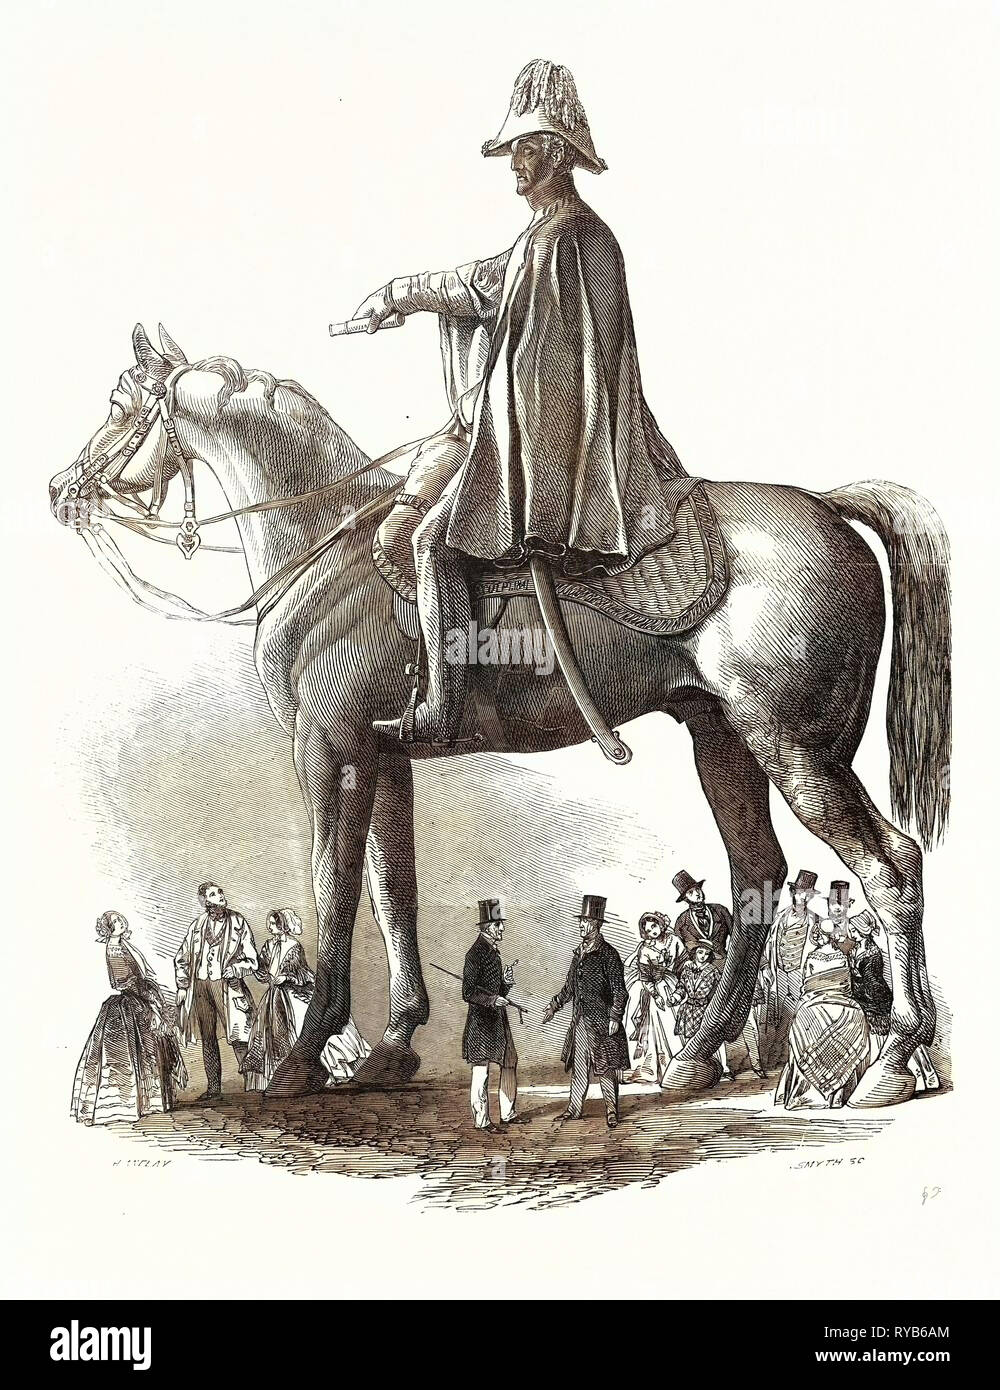 Colosal estatua del Duque de Wellington, 1846 Foto de stock